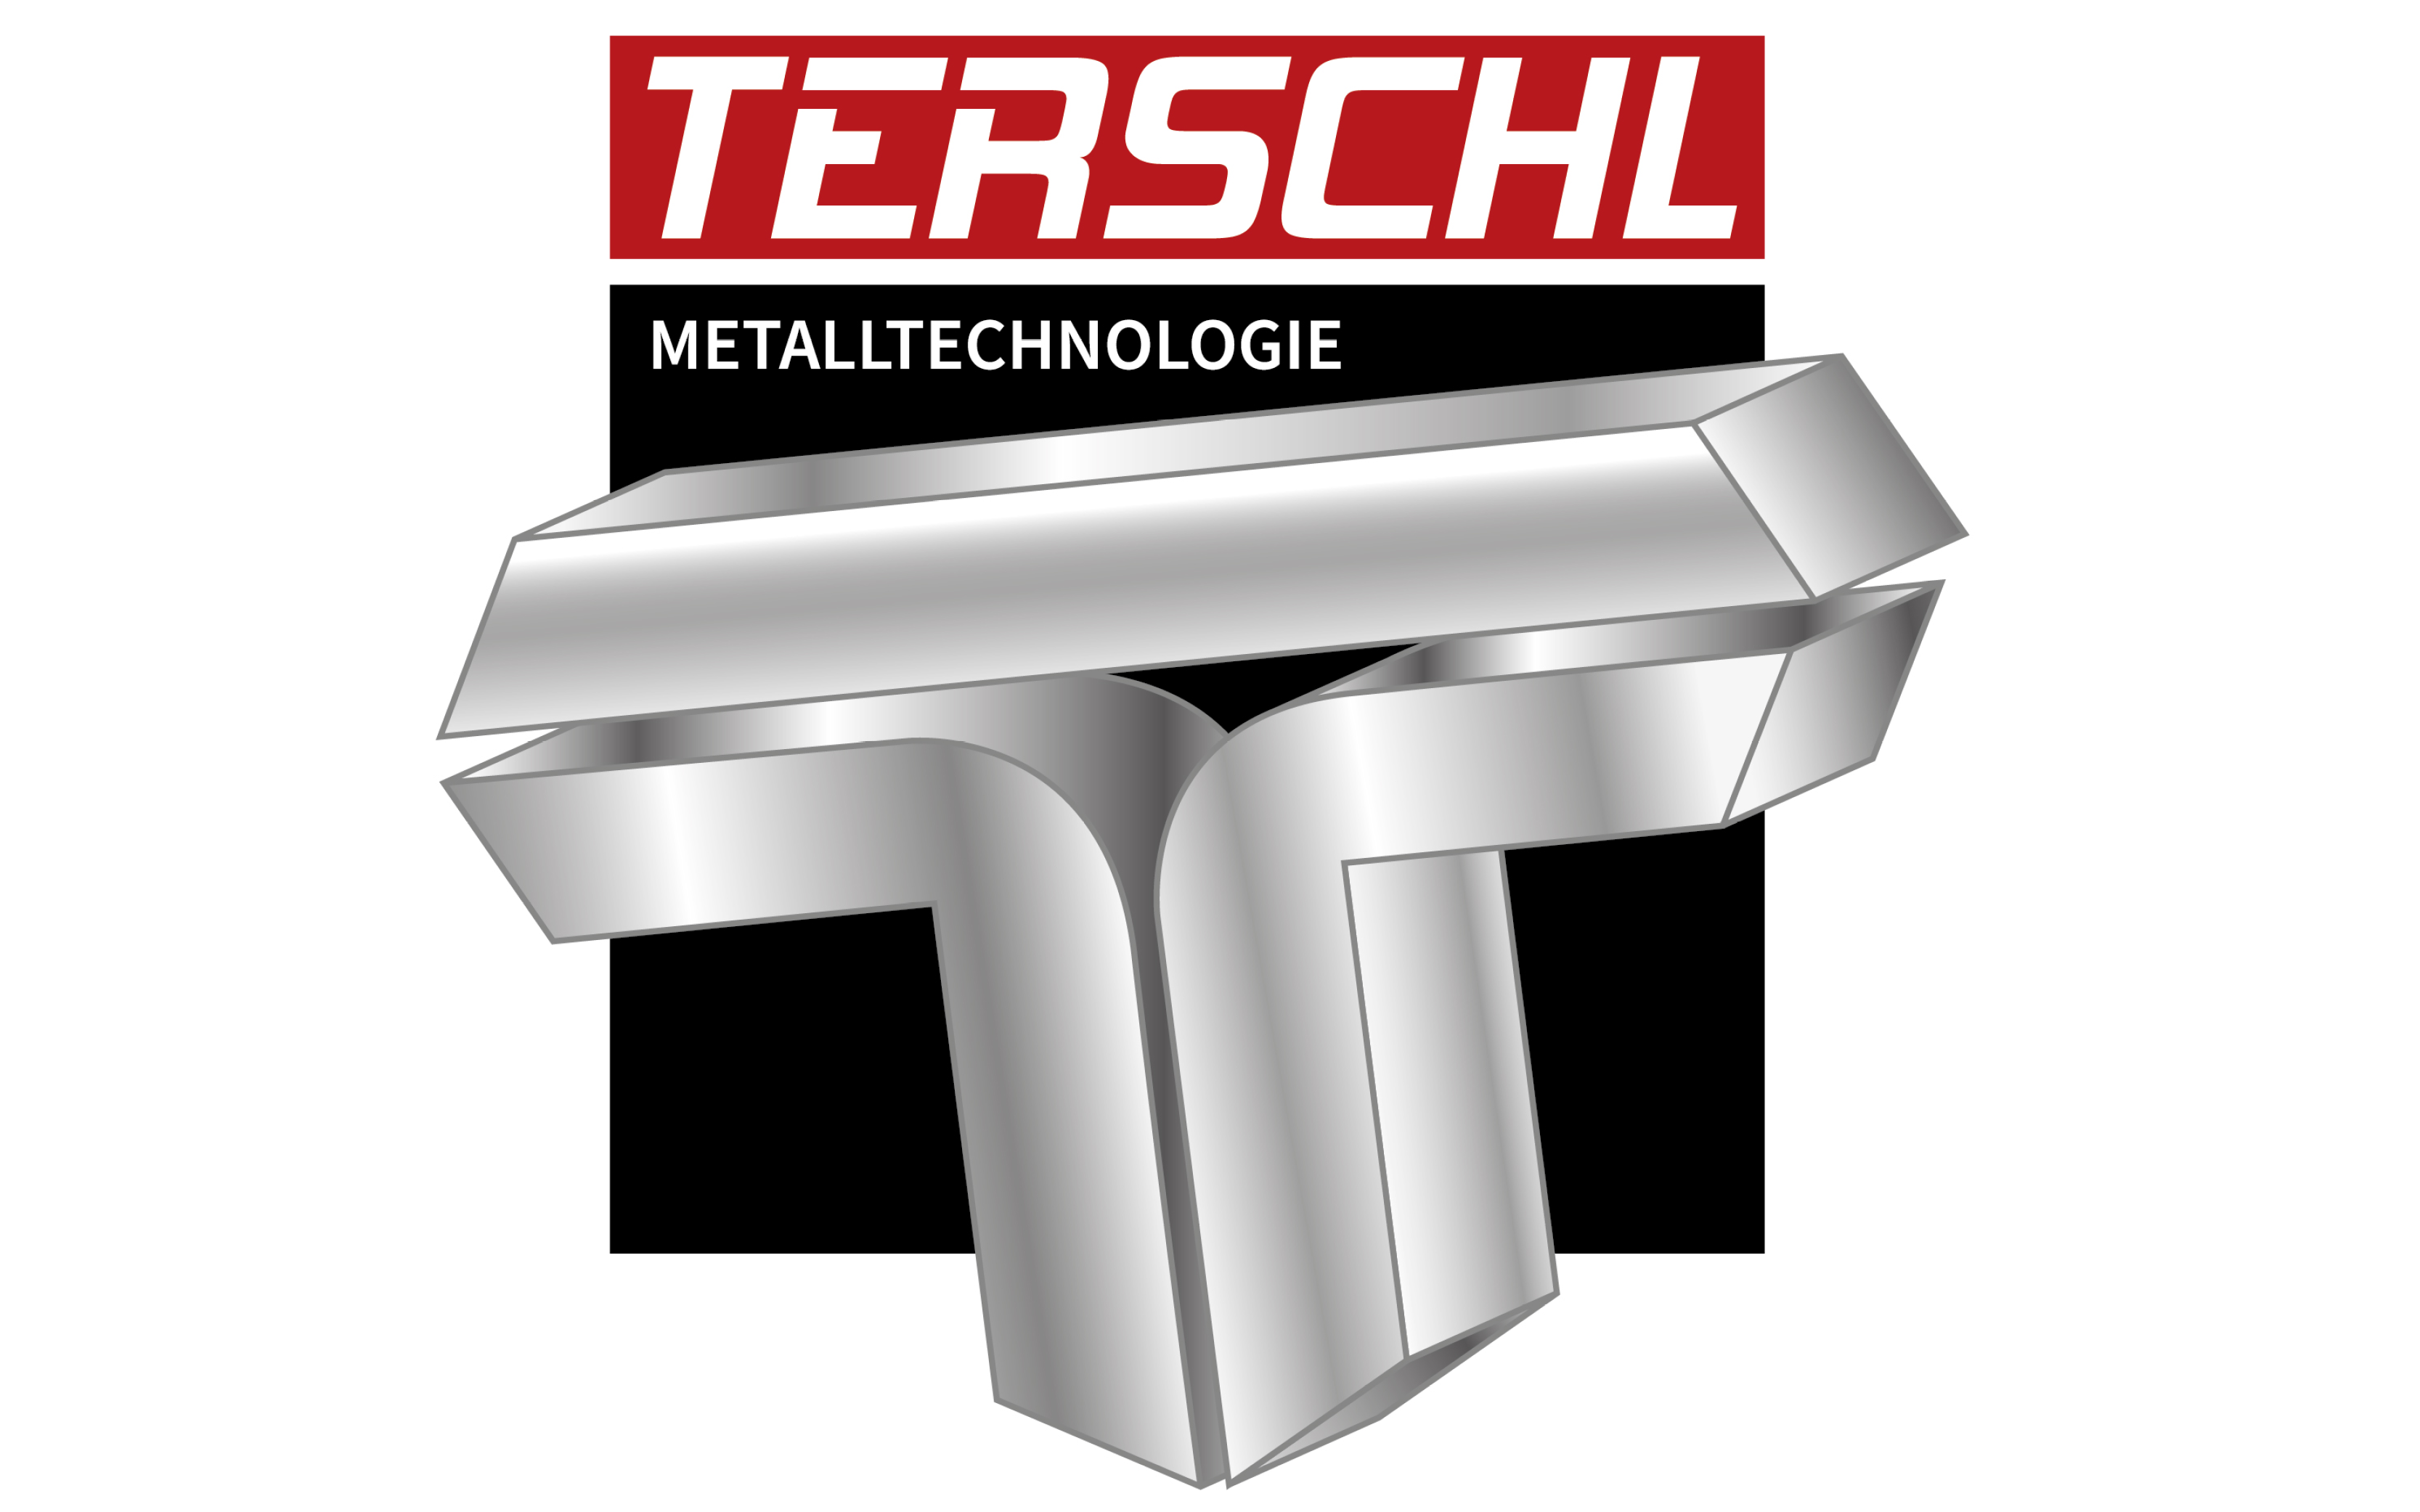 Terschl CNC